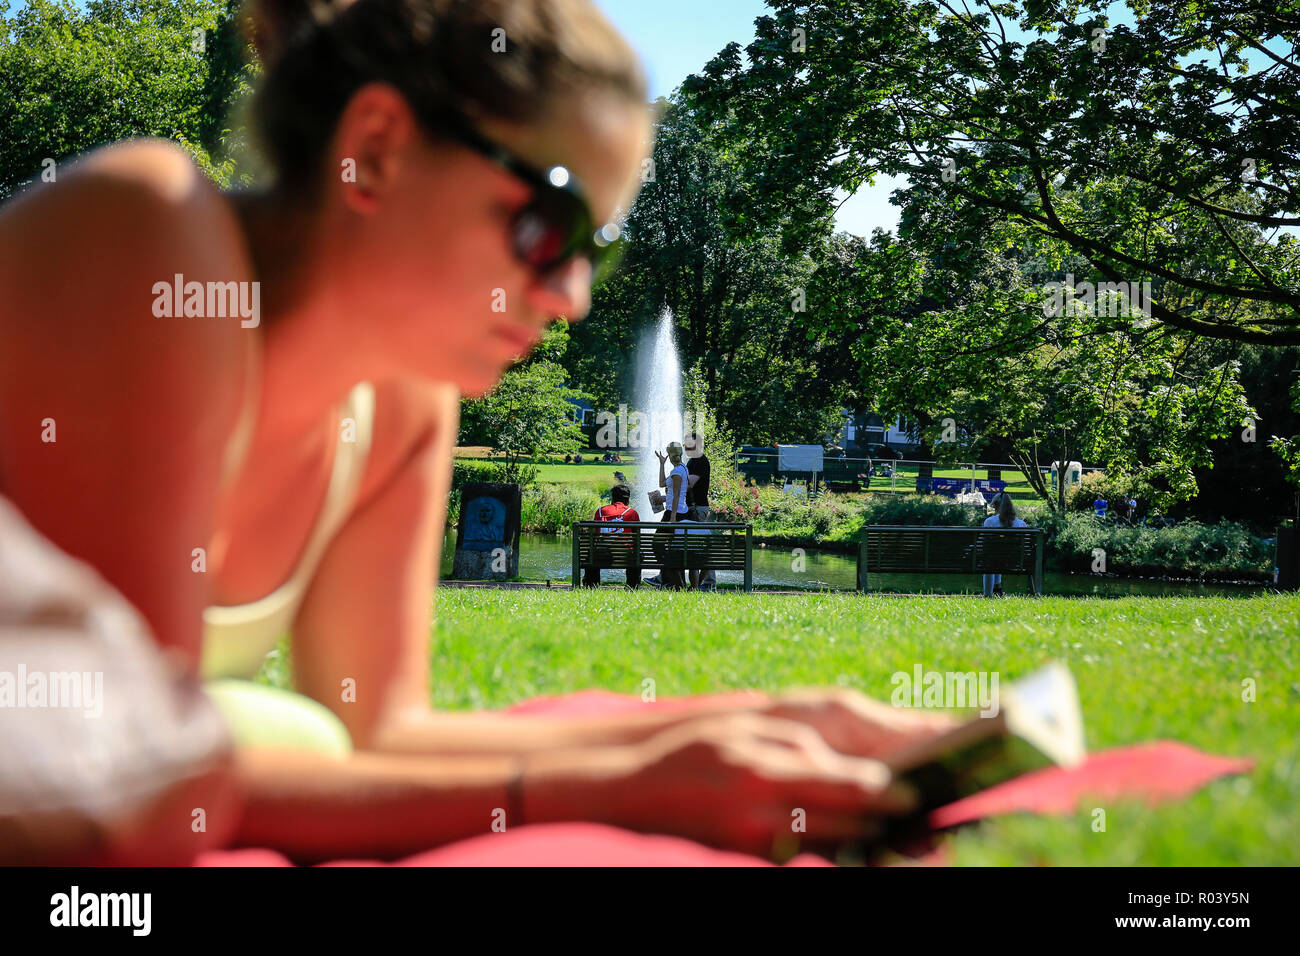 Essen, Alemania, área de Ruhr, ciudad jardín, joven yace en la pradera y lee en un libro Foto de stock